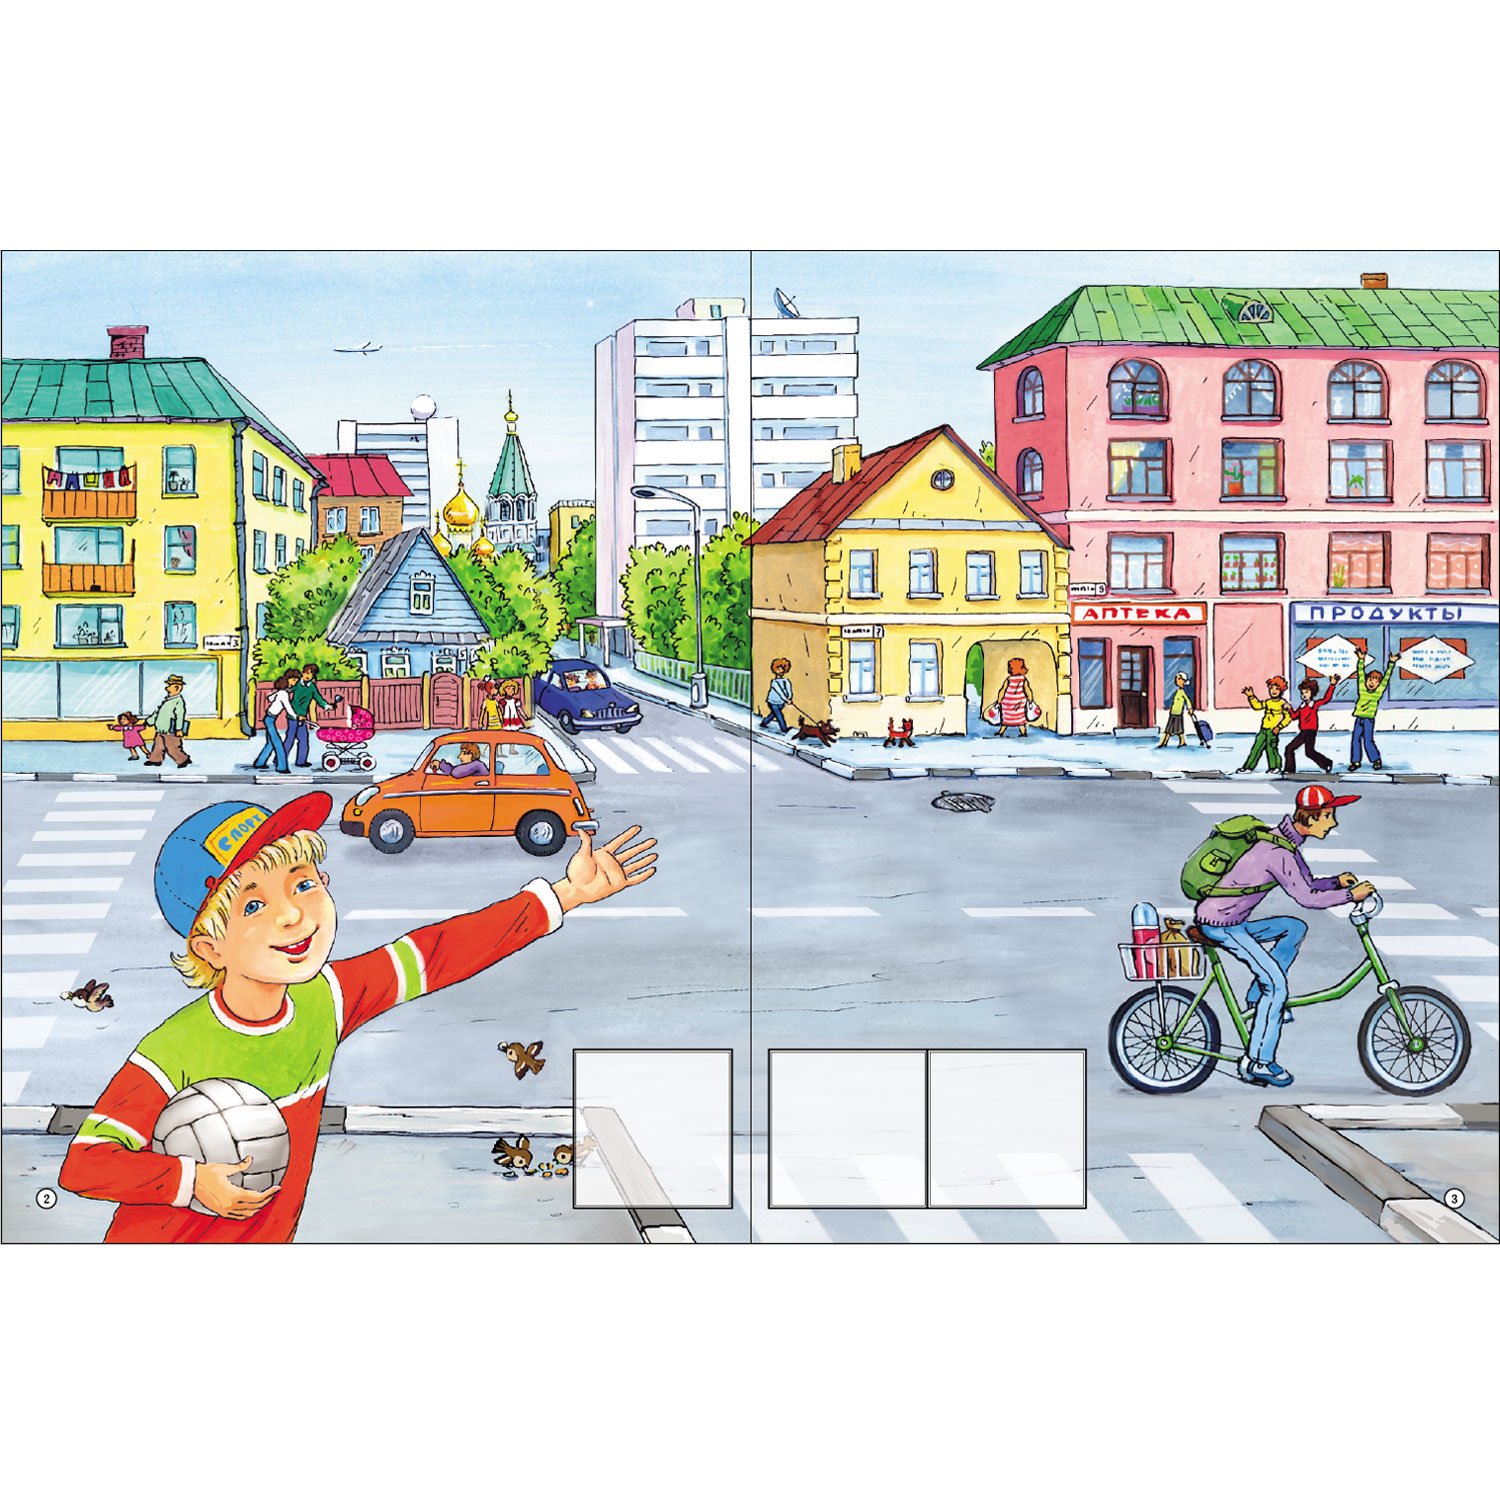 Занятия в маленьком городе. Иллюстрации транспорт на улицах города для детей. Сюжетная картина улица города. Улица города для детей. Картина улица нашего города.